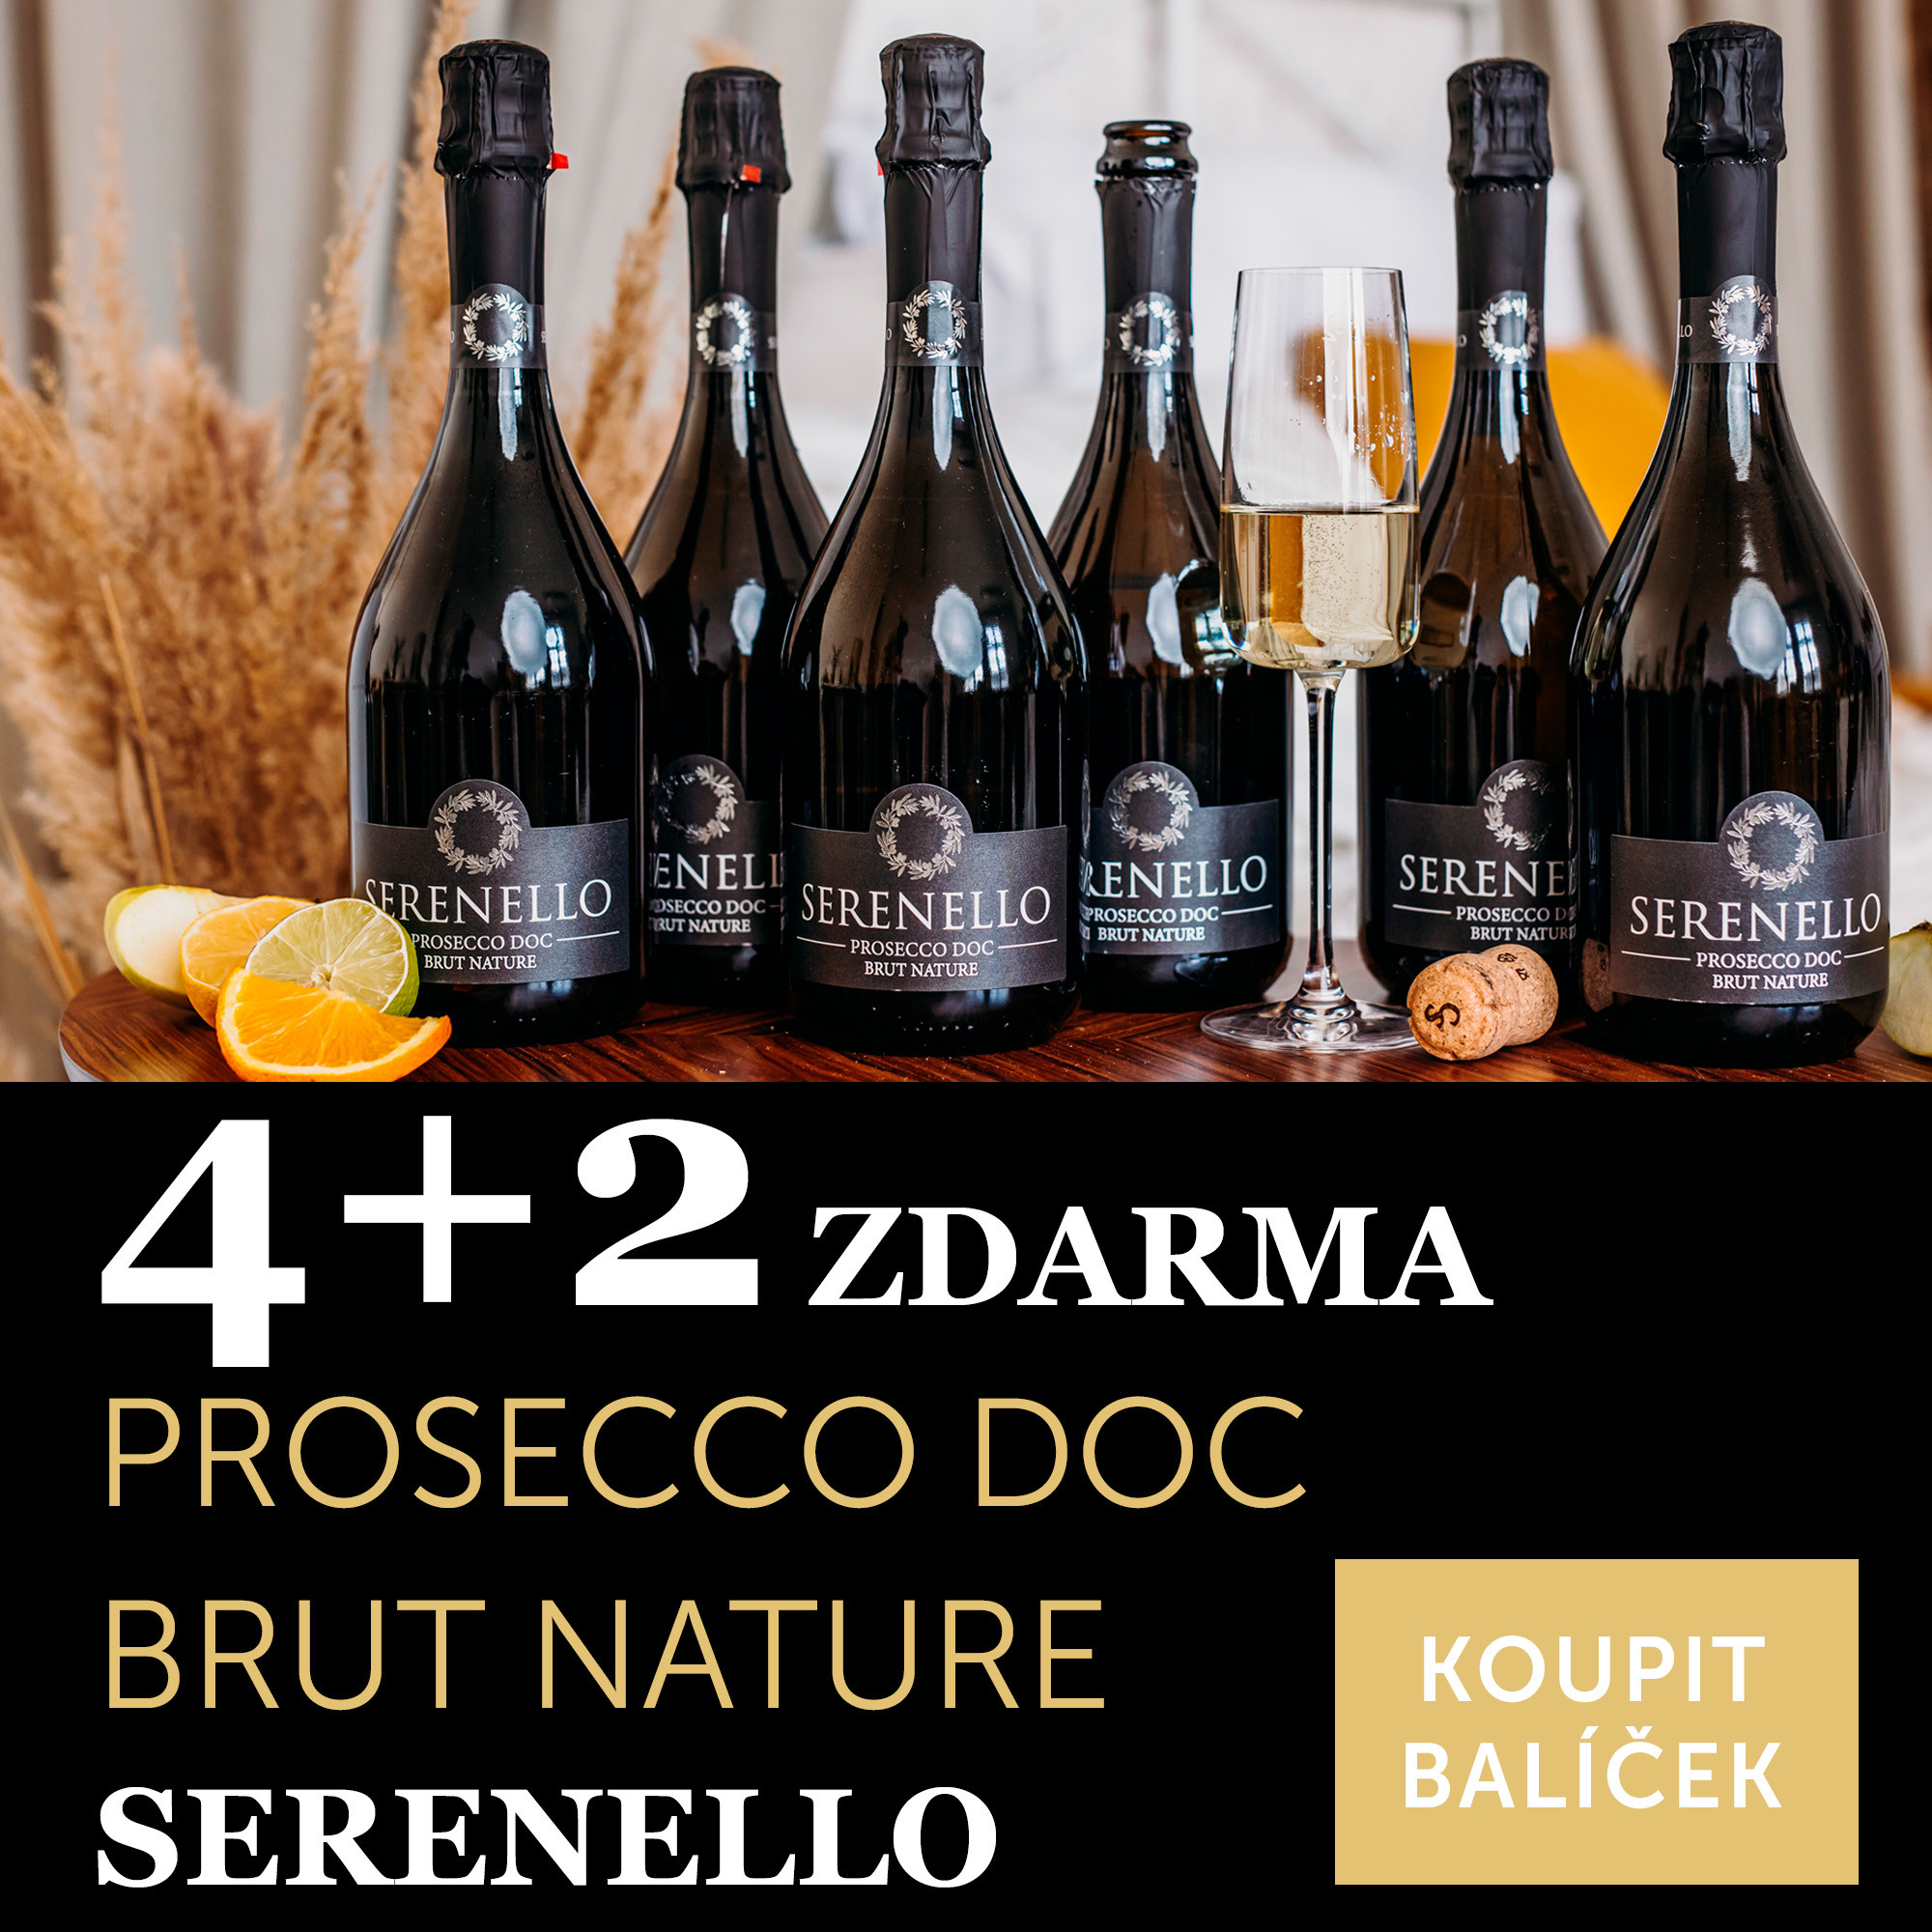 Víno měsíce června - Prosecco DOC brut nature Serenello 4+2 zdarma